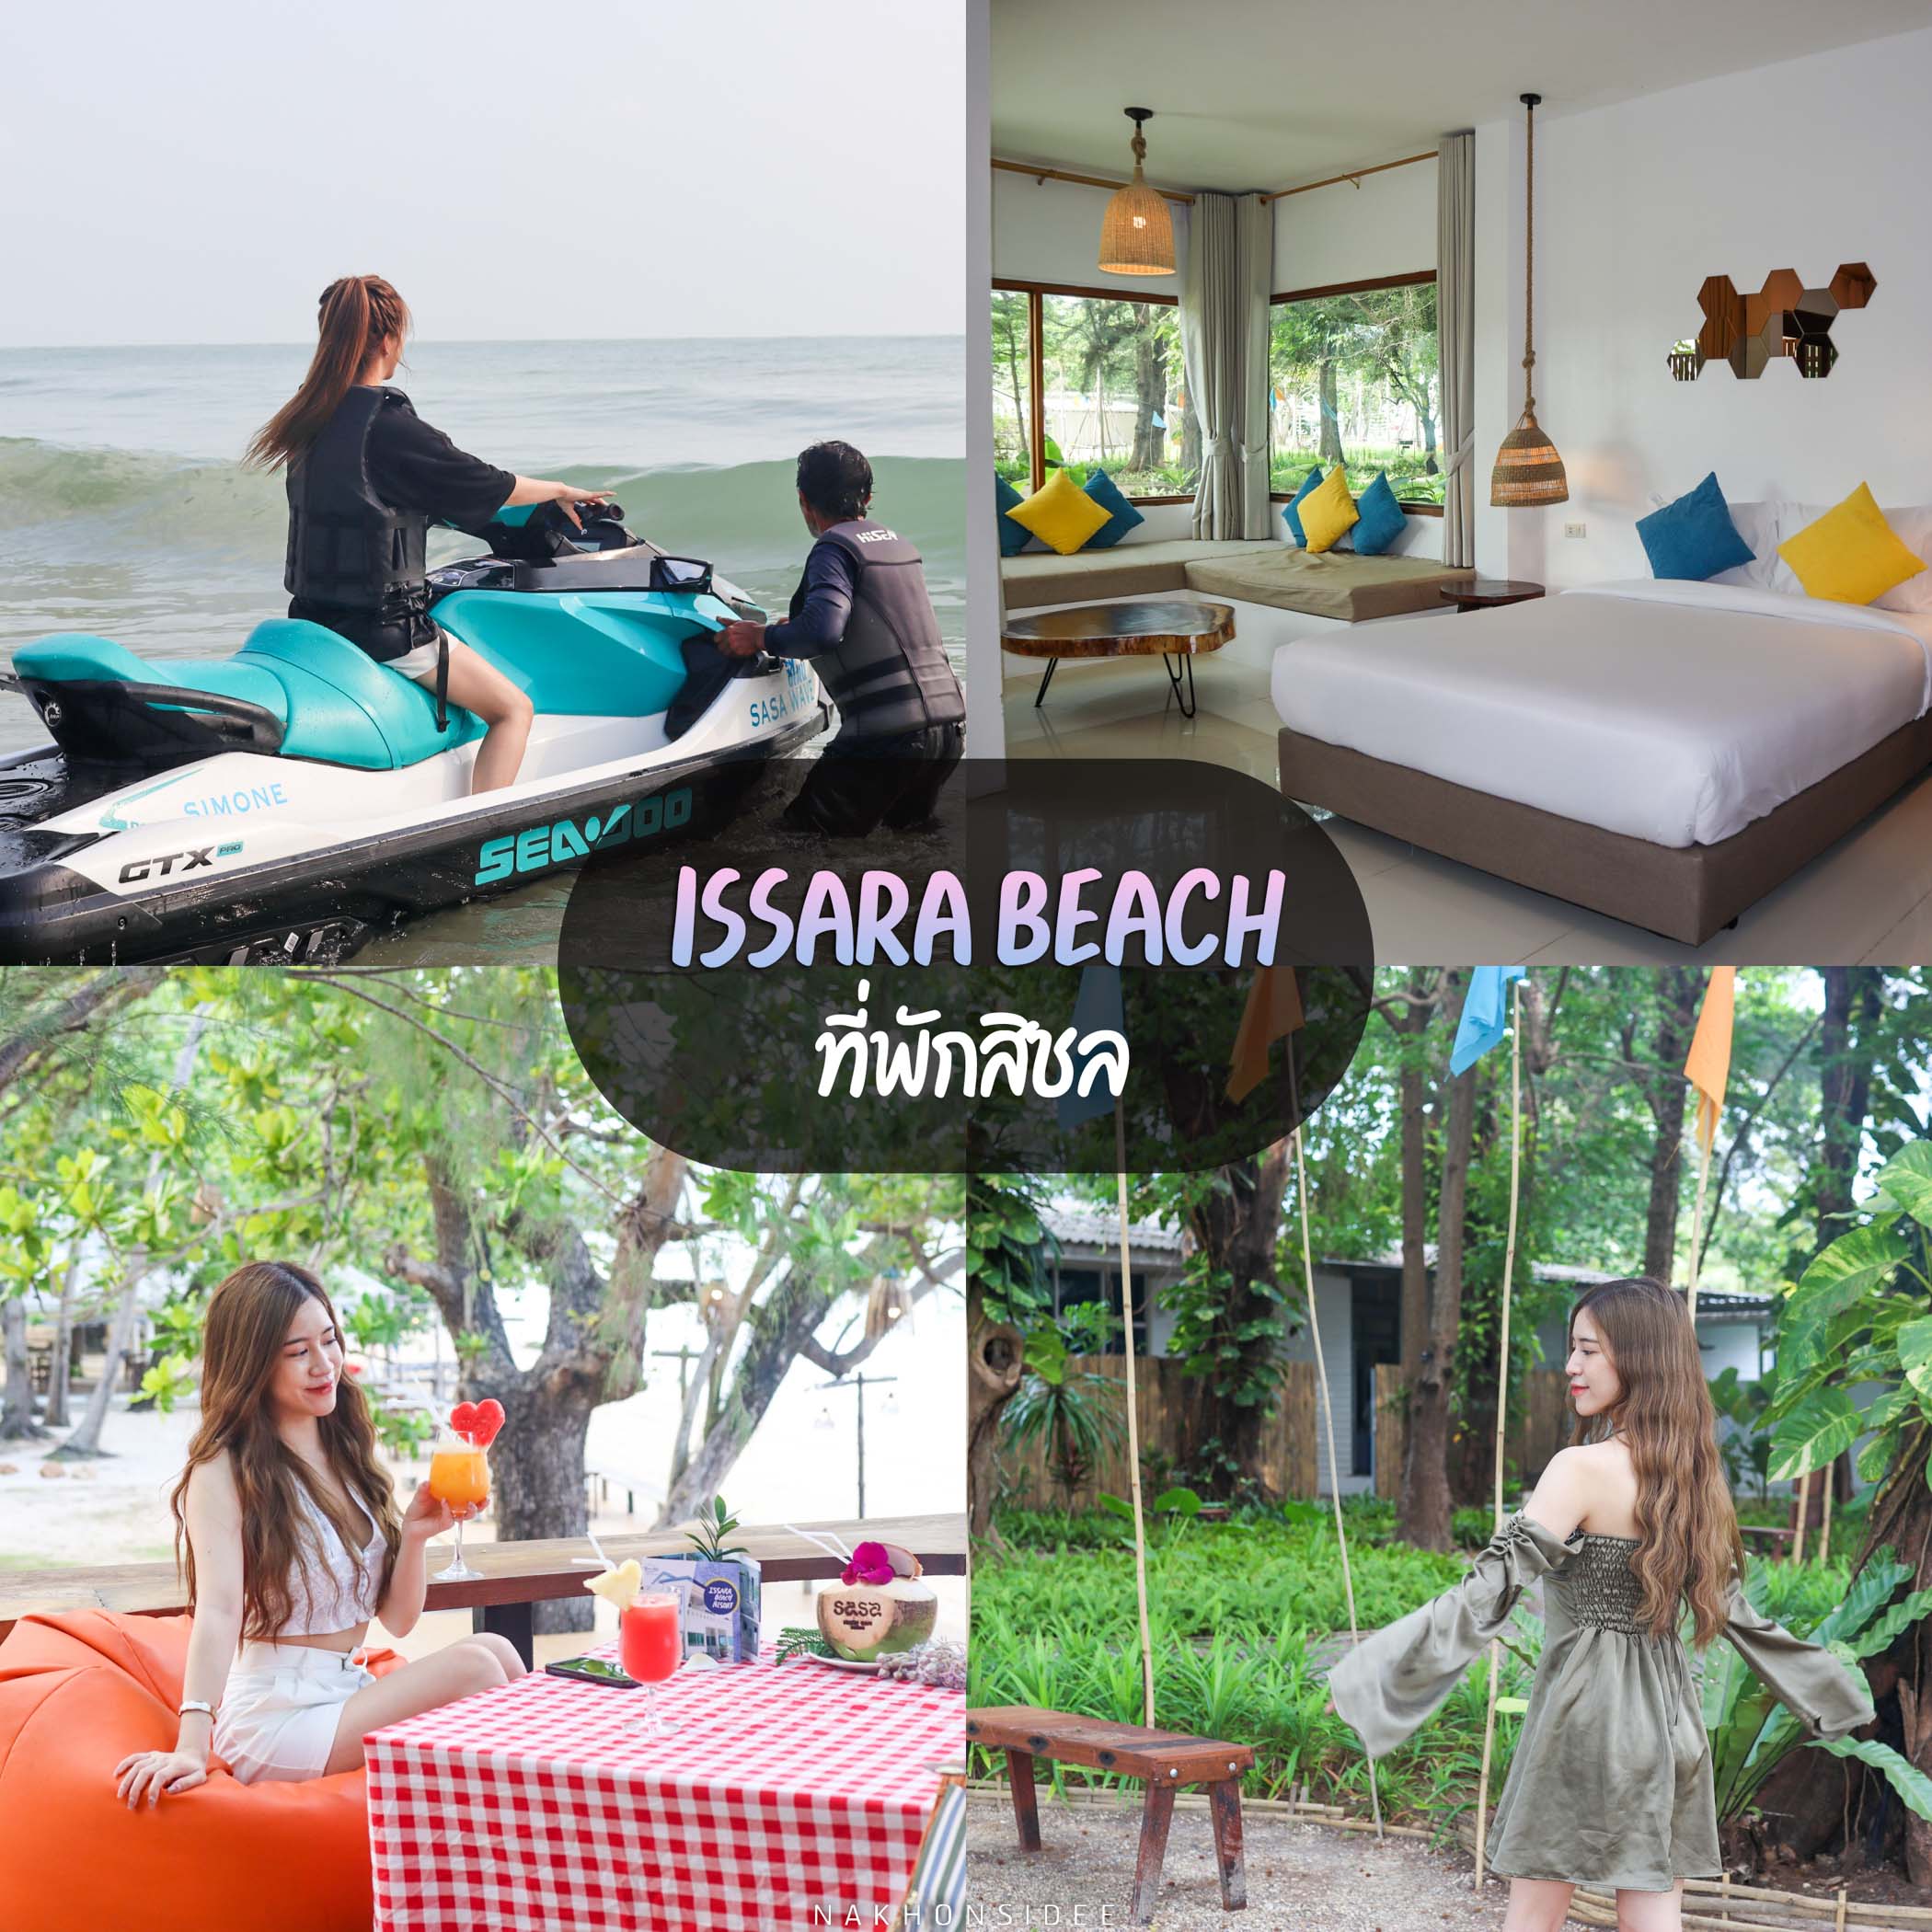 4.Issara-Beach-Resort-ที่พักสิชล ที่พักสิชลริมทะเล-บอกเลยว่าที่นี่ได้ครบทั้งที่พัก-คาเฟ่-ร้านอาหาร-ไฮไลท์ทีเด็ดจะมีทั้งกิจกรรมทางน้ำ-พายเรือคายัค-เจ็ตสกี-ปั่นจักรยานรอบโรงแรม-และมุมโซนใหม่ล่าสุด-ที่นั่งบนดาดฟ้าคาเฟ่-บอกเลยว่าปัง-วิวทะเลชิวๆเลยแหละ-ห้องพักมีหลากหลาย-Type-ให้เลือก-ห้องสไตล์โมเดิร์น-มีทั้งแบบครอบครัว-คู่รัก-กับเพื่อนๆก็ได้หมดเลย-ต้องมาเช็คอินกันน้าา ที่พักสิชล,ที่พักหาดหินงาม,ที่พักเขาพลายดำ,สิชล,เขาพลายดำ,Sichon